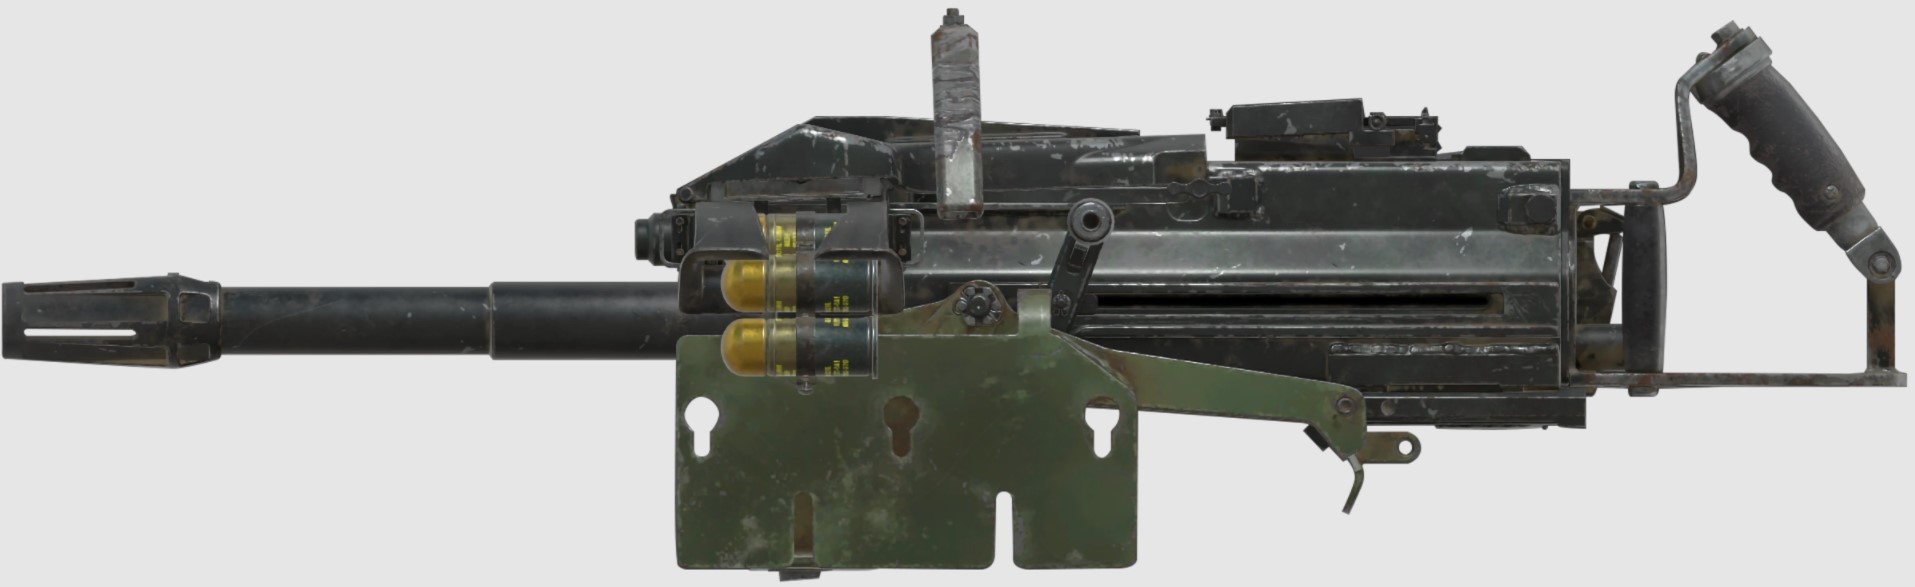 Fallout76 Grenade Auto 